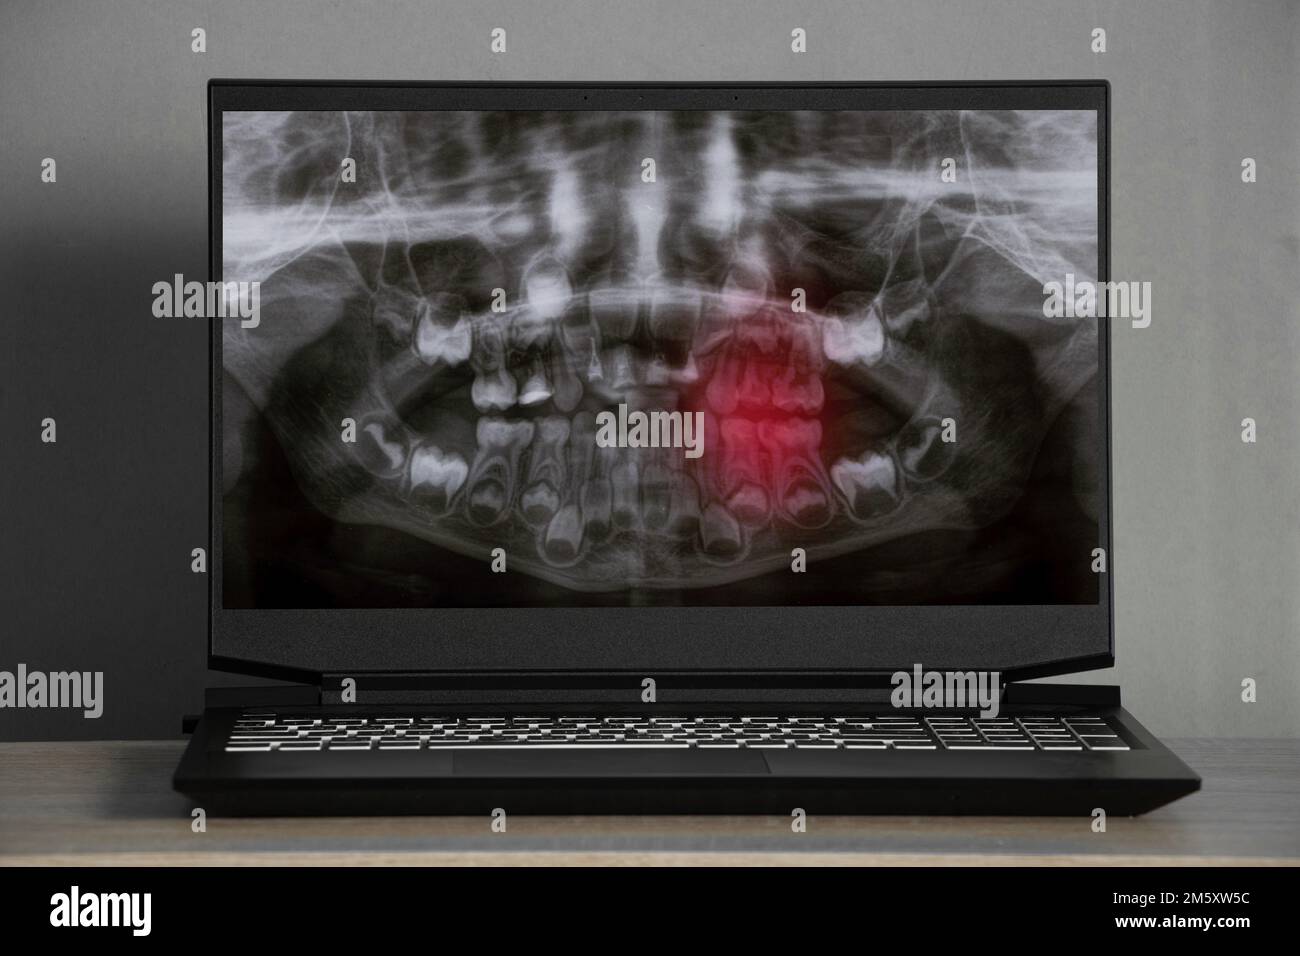 Radiographie panoramique des dents des enfants de deux mâchoires, orthopétomogramme des dents des enfants sur les écrans d'ordinateur portable sur la table Banque D'Images